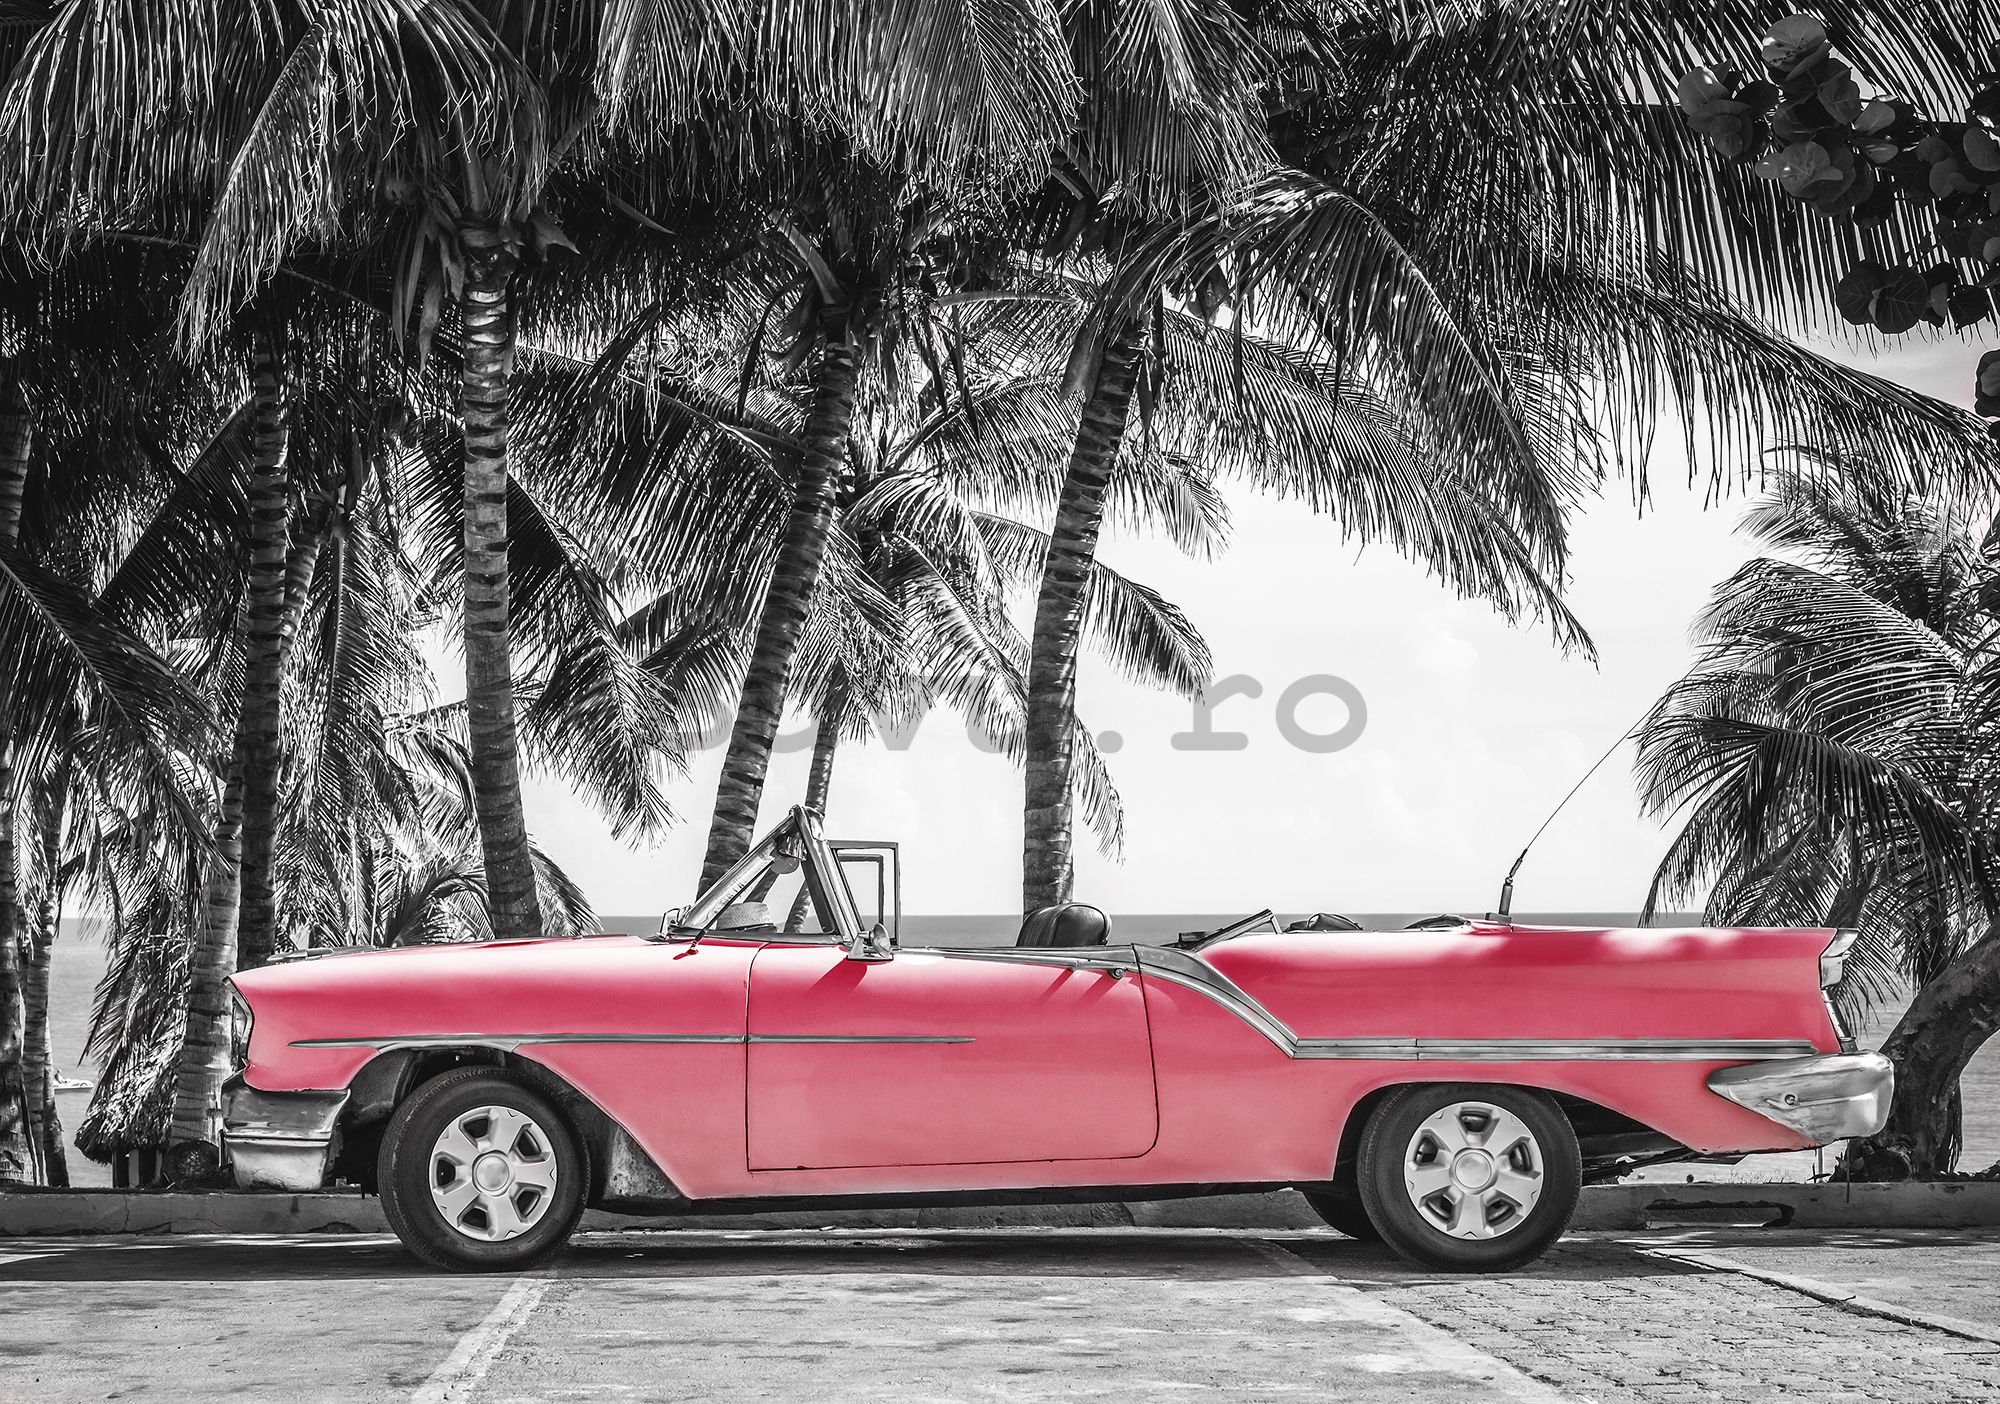 Fototapet: Masina rosie Cuba - 104x152,5 cm